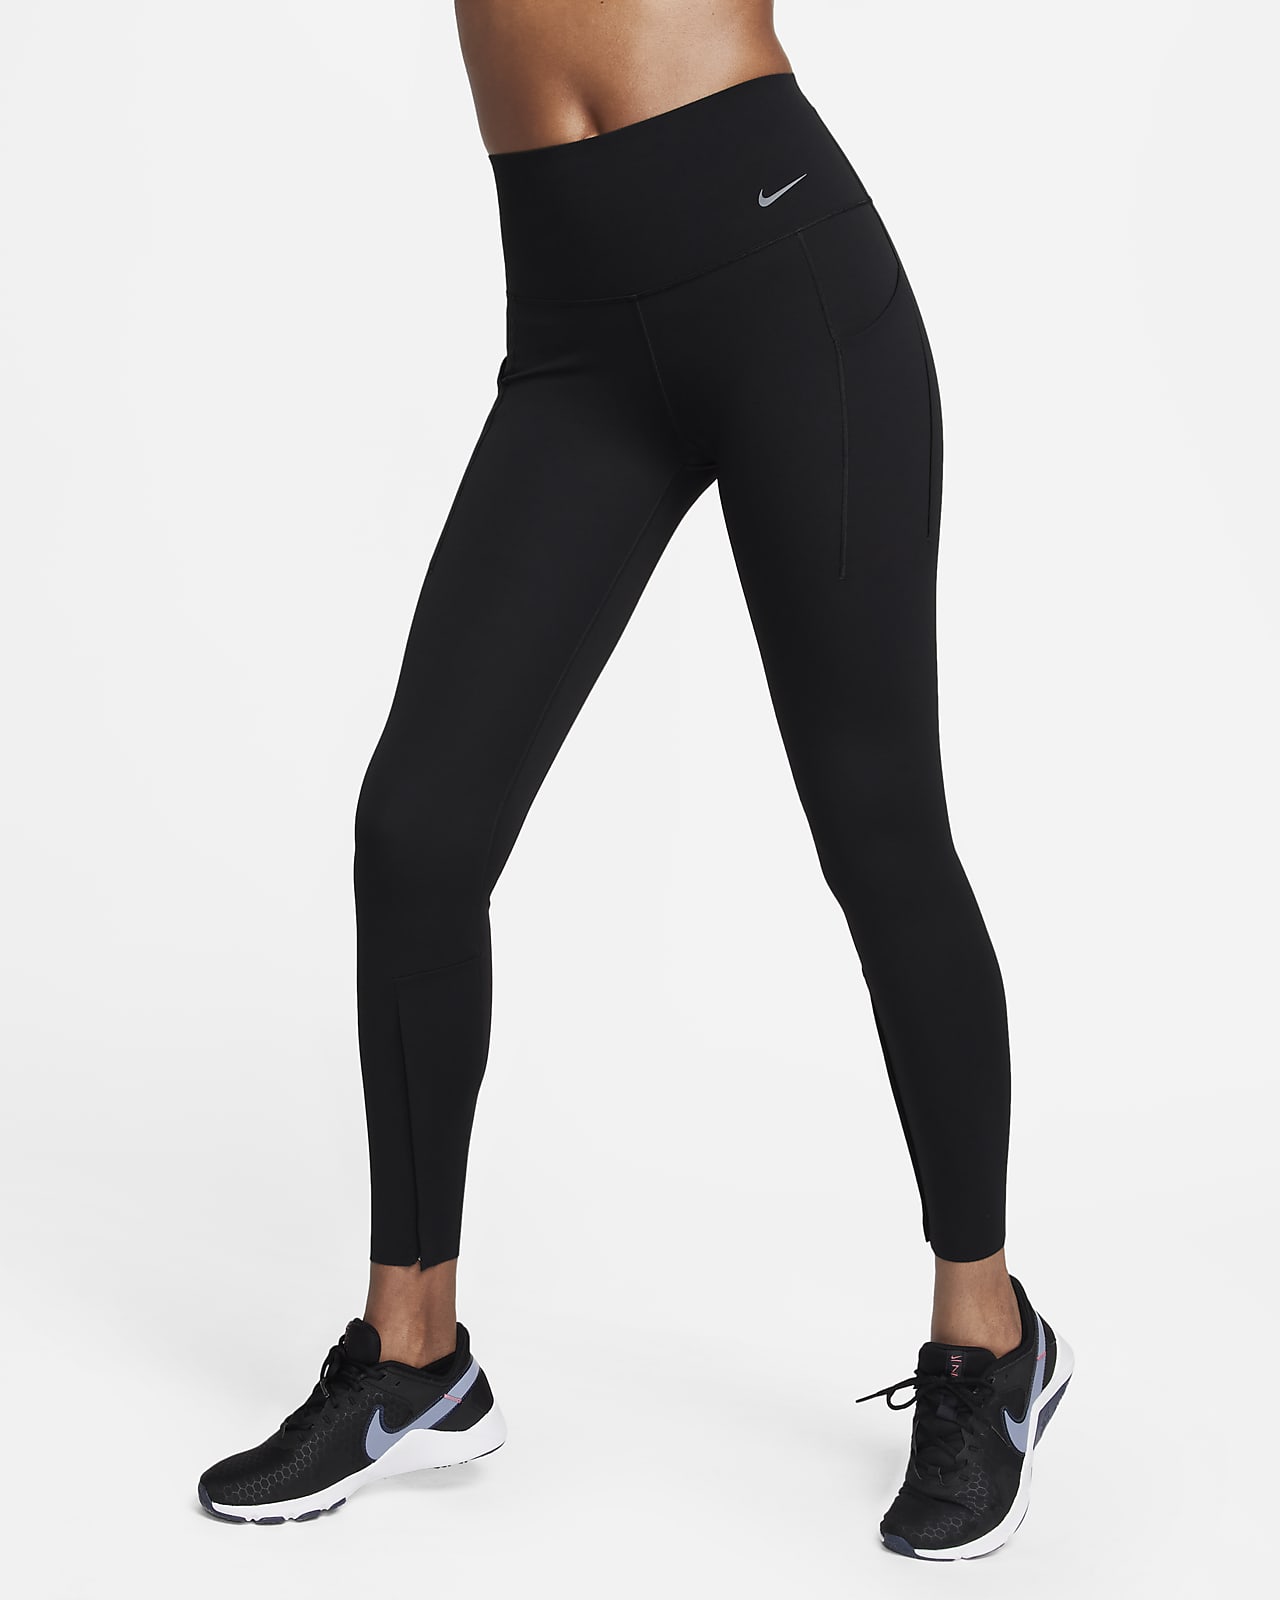 Women's Black Leggings & Tights. Nike ZA